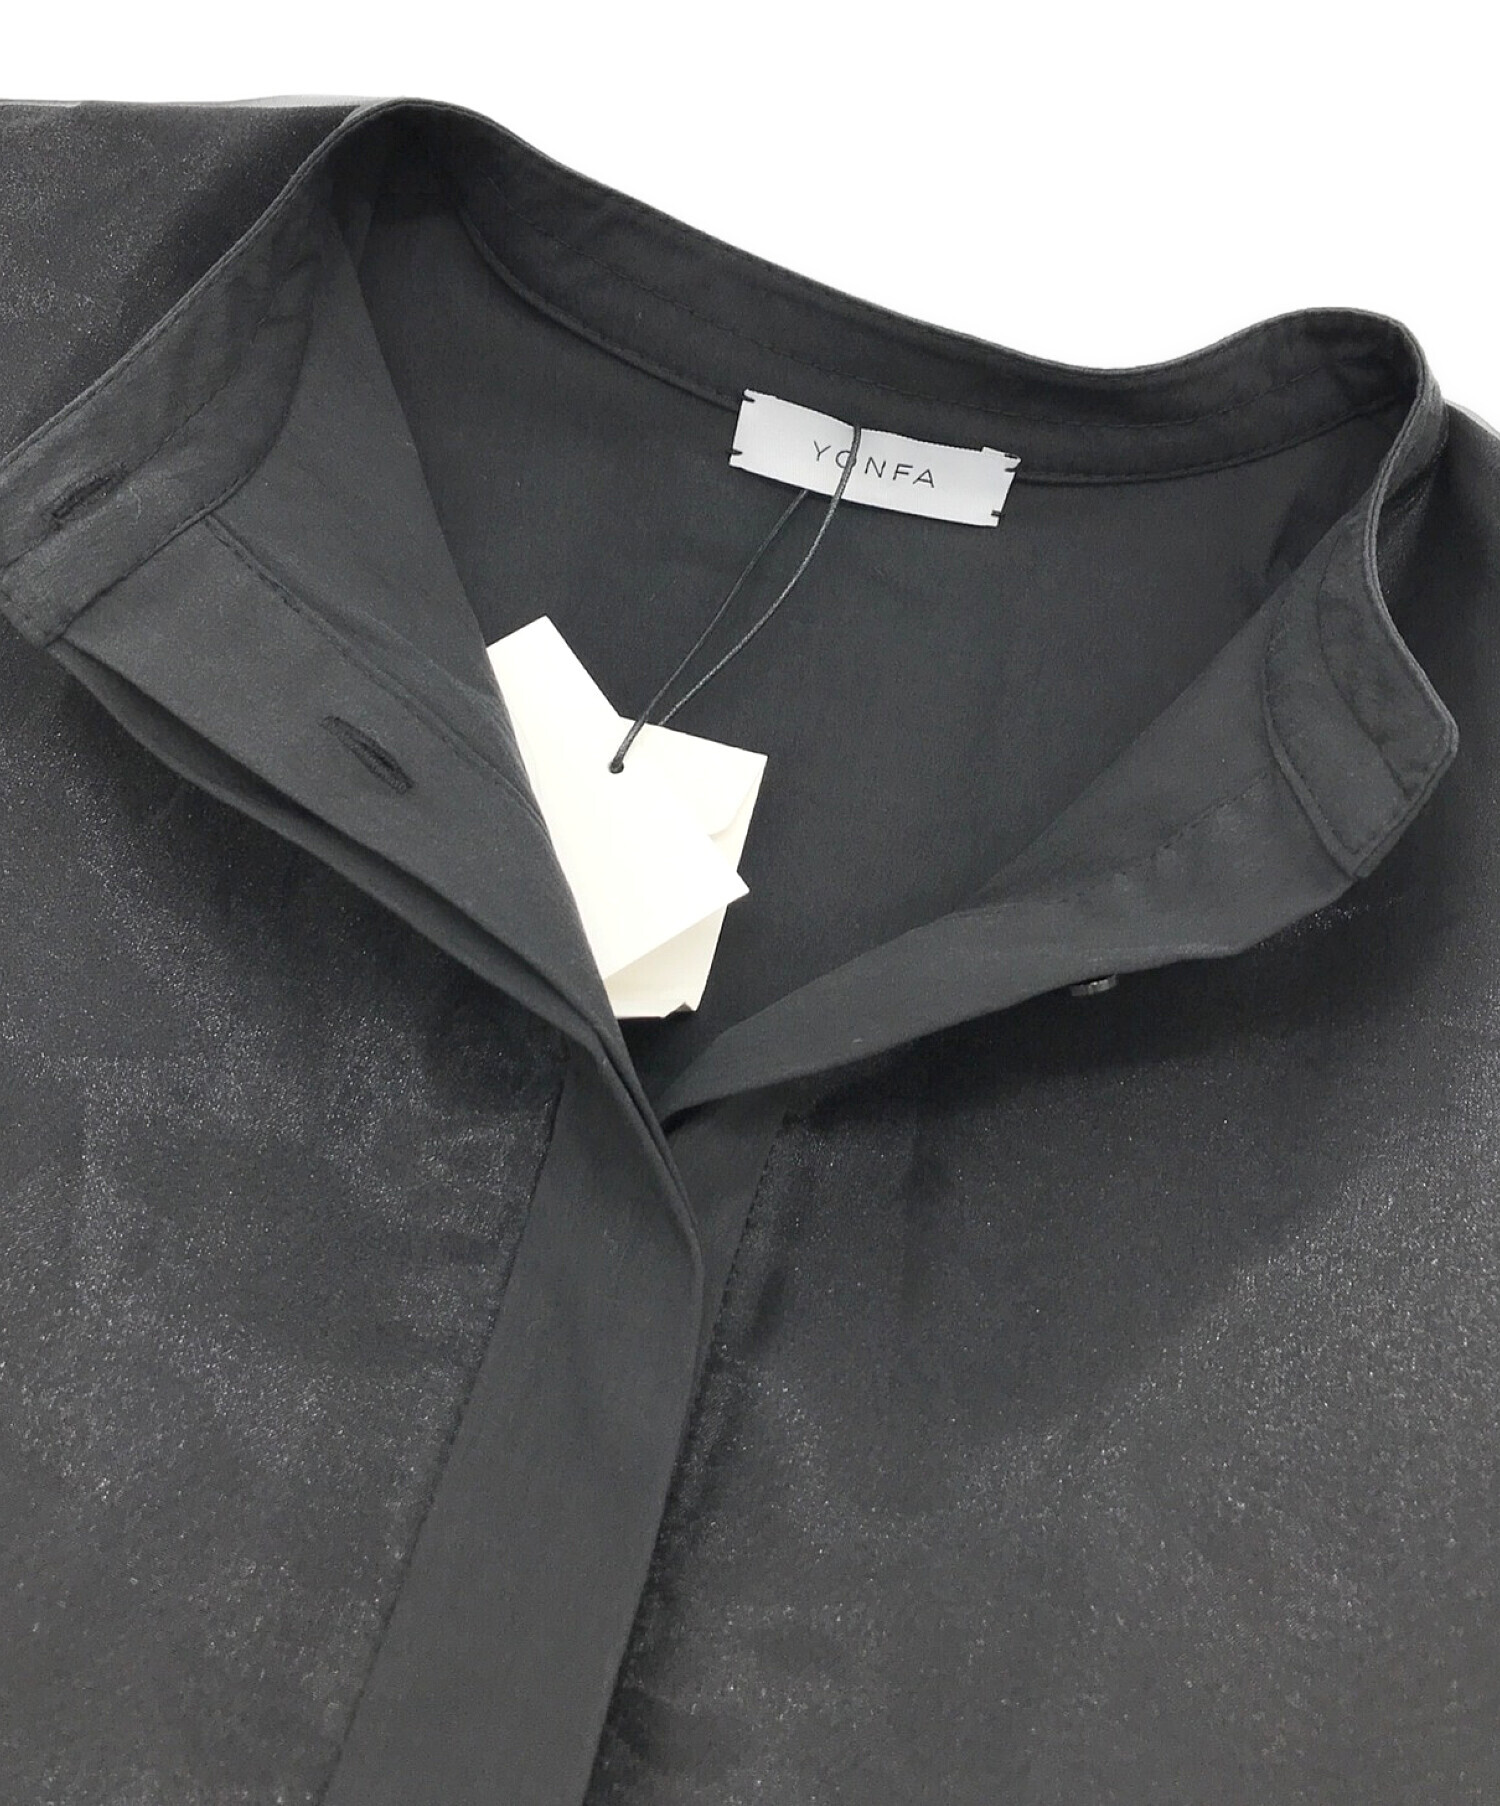 YONFA (ヨンファ) シースルーシャツチュニック ブラック サイズ:FREE 未使用品